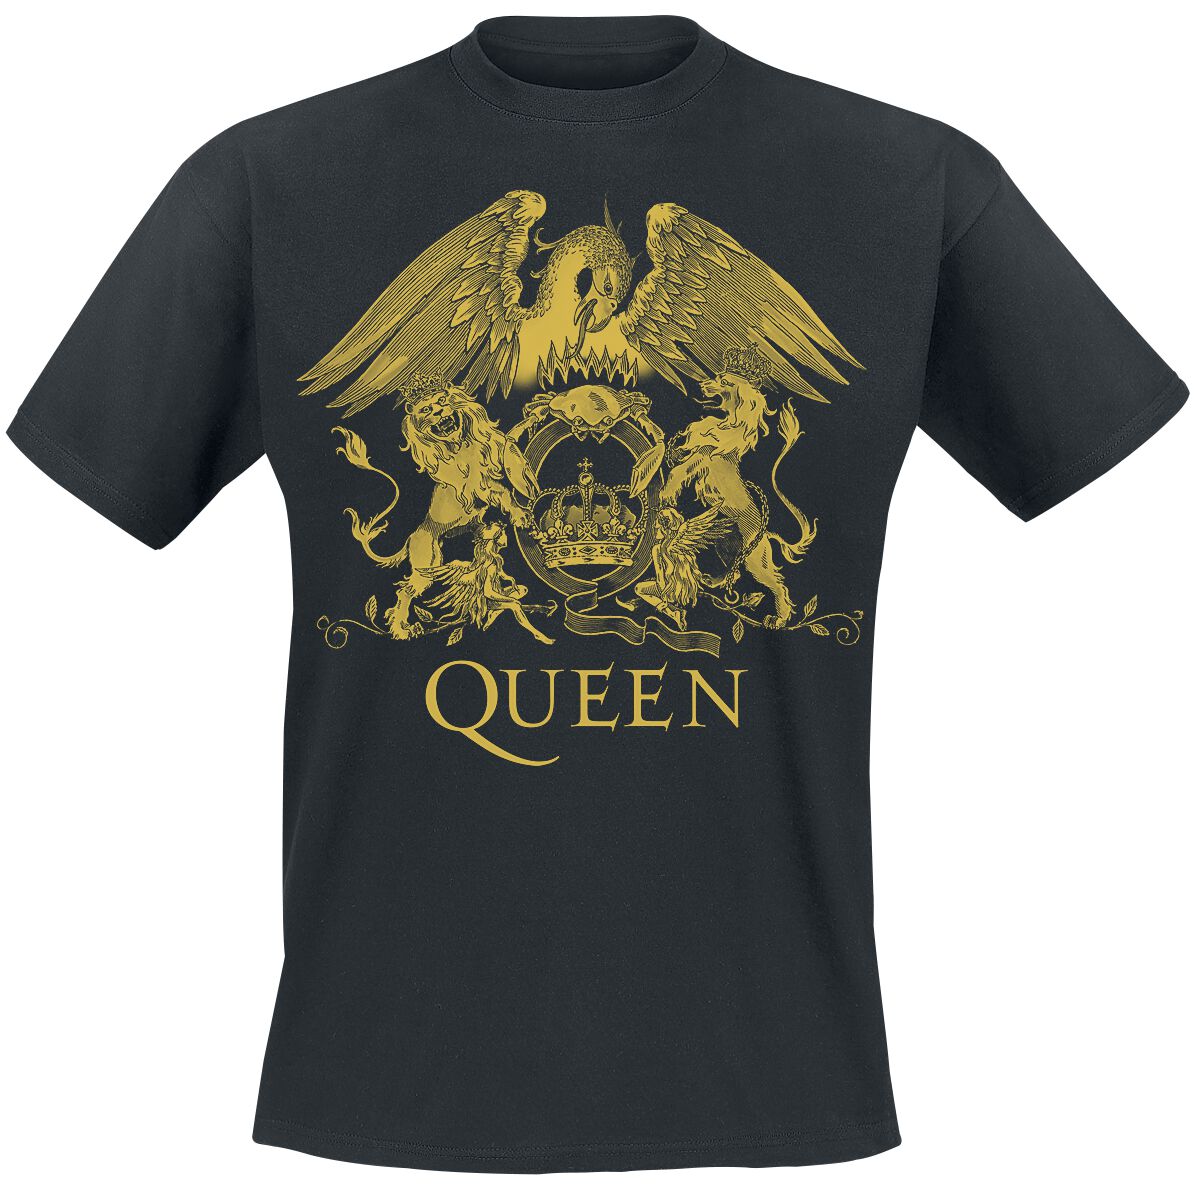 Queen T-Shirt - Classic Crest - S bis 3XL - für Männer - Größe S - schwarz  - Lizenziertes Merchandise!